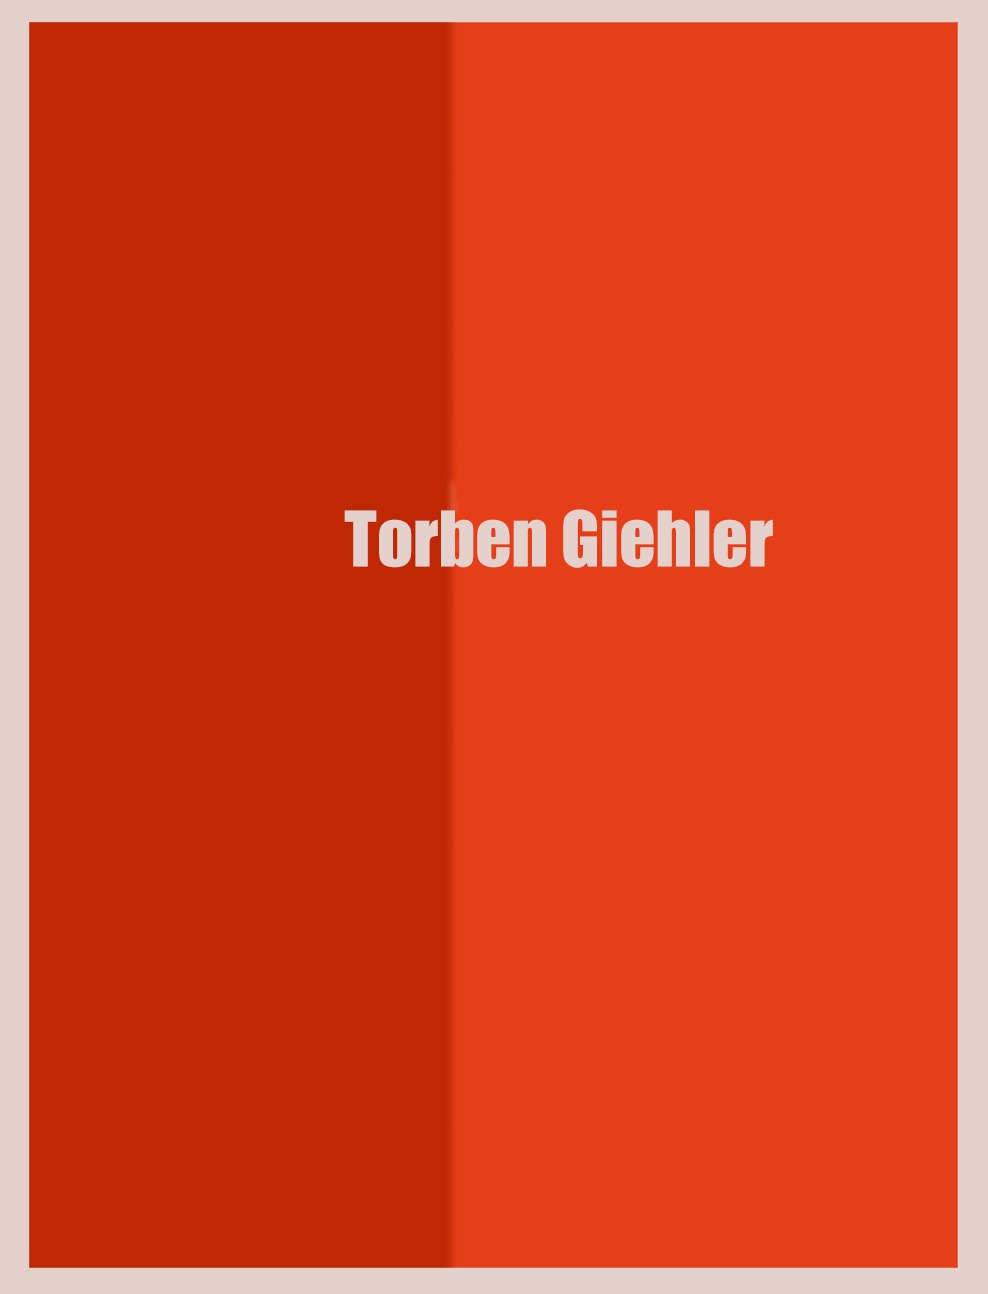 Torben Giehler